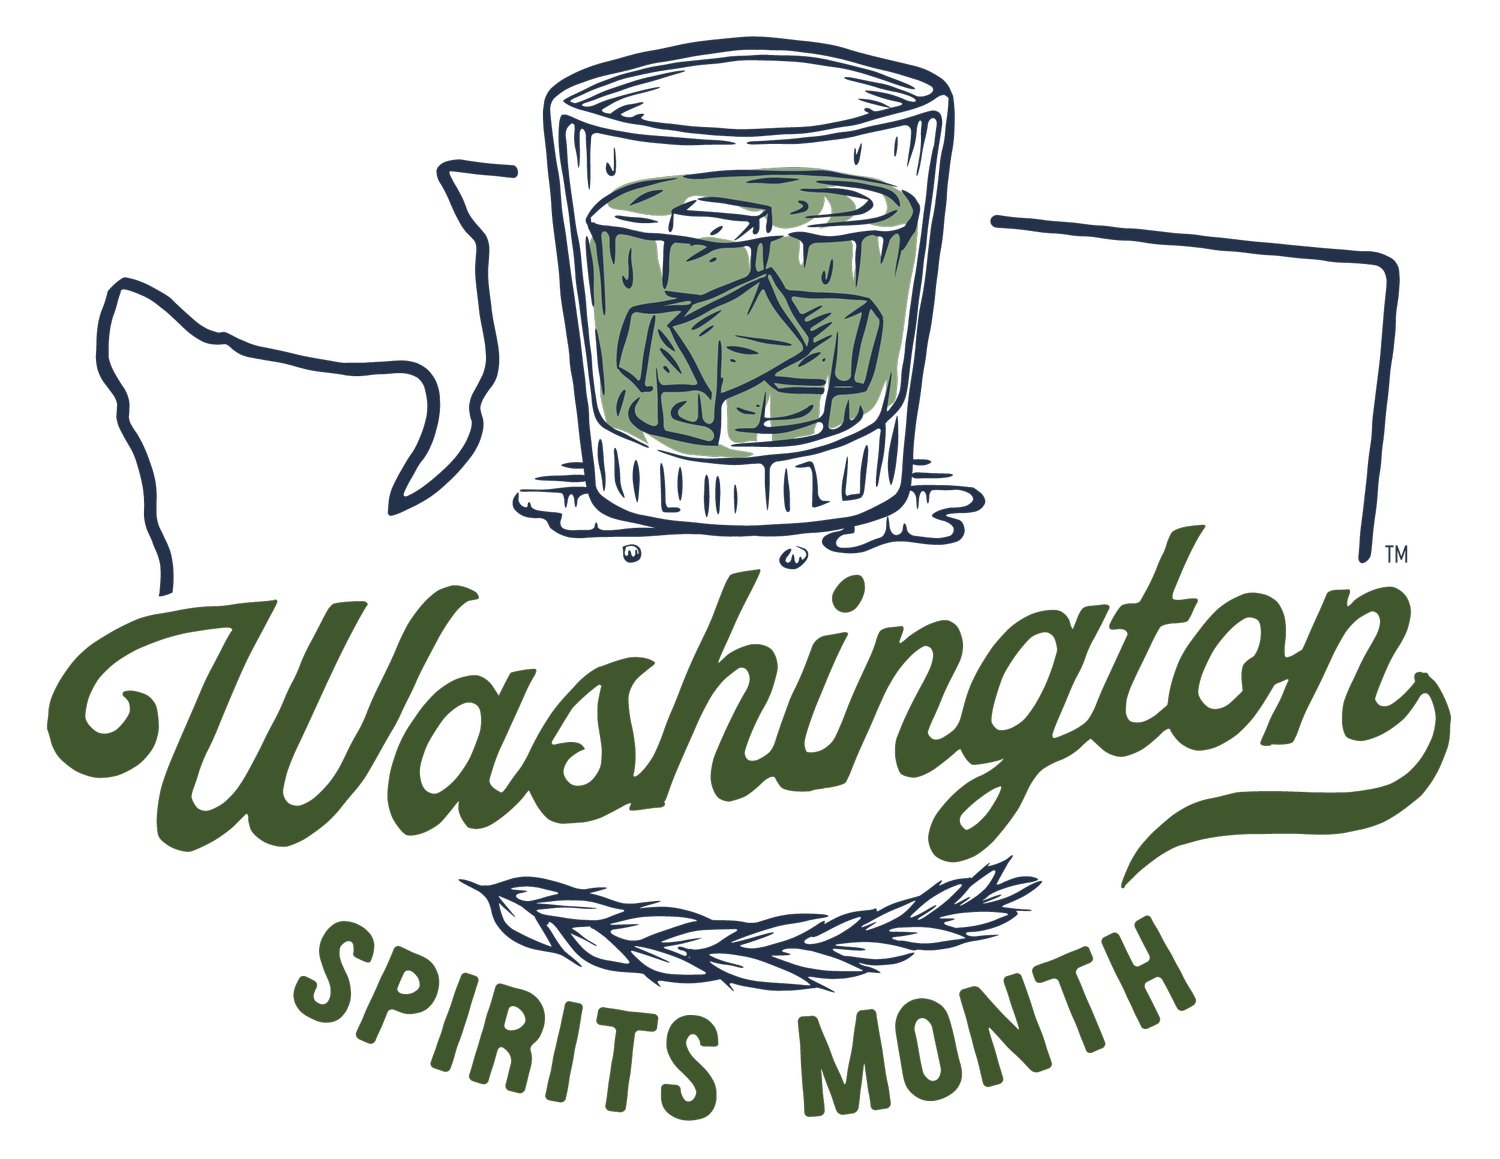 Washington Spirits Month